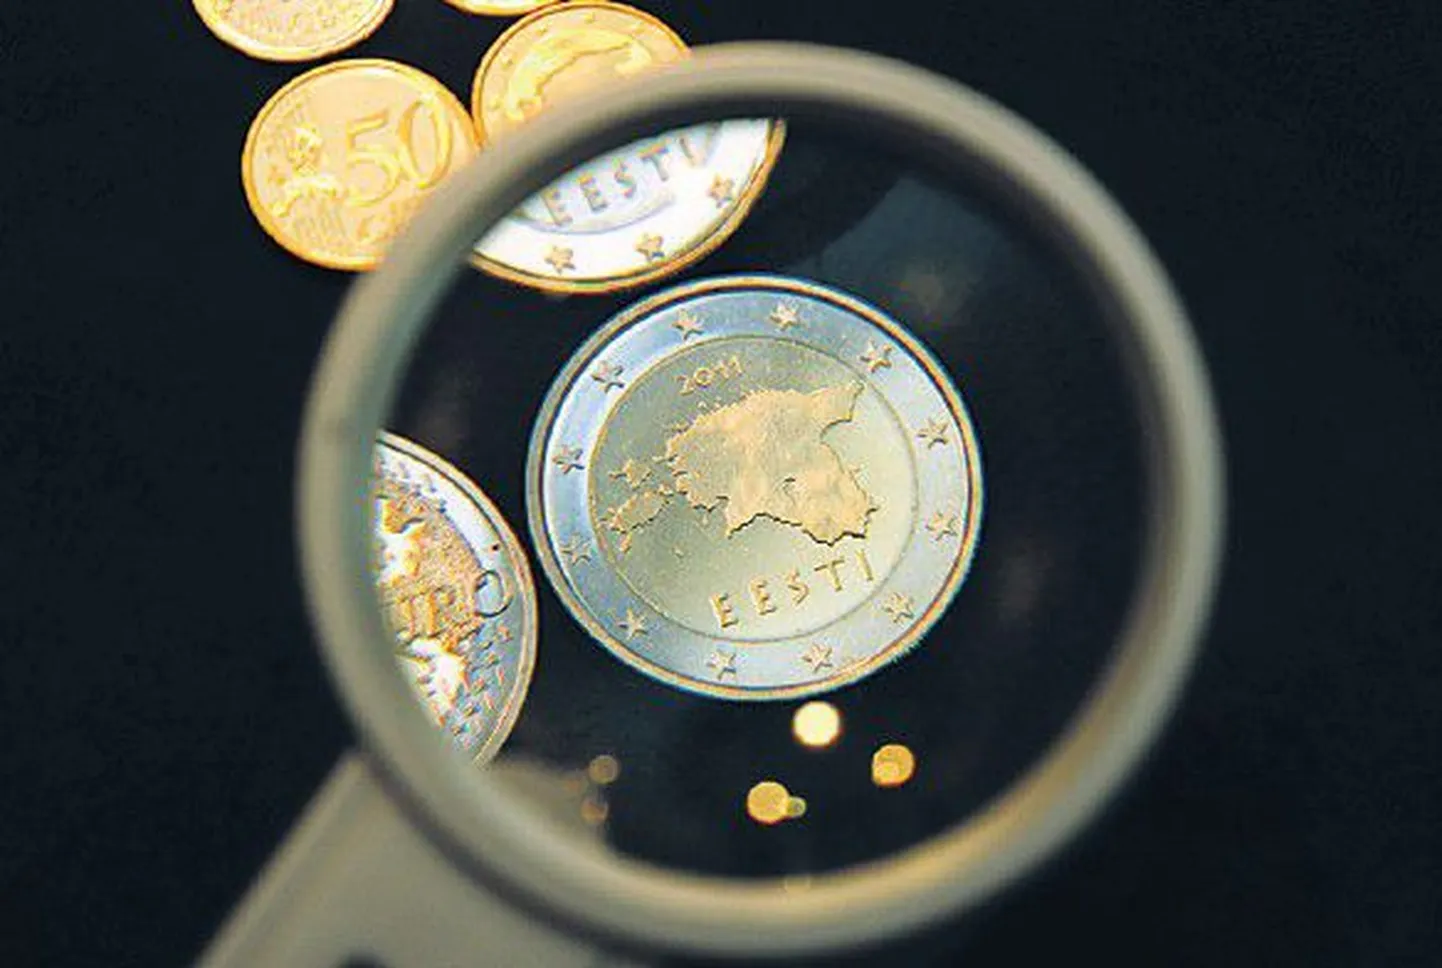 Эстонские евромонеты будут недействительны в качестве платежного средства до наступления нового 2011 года.